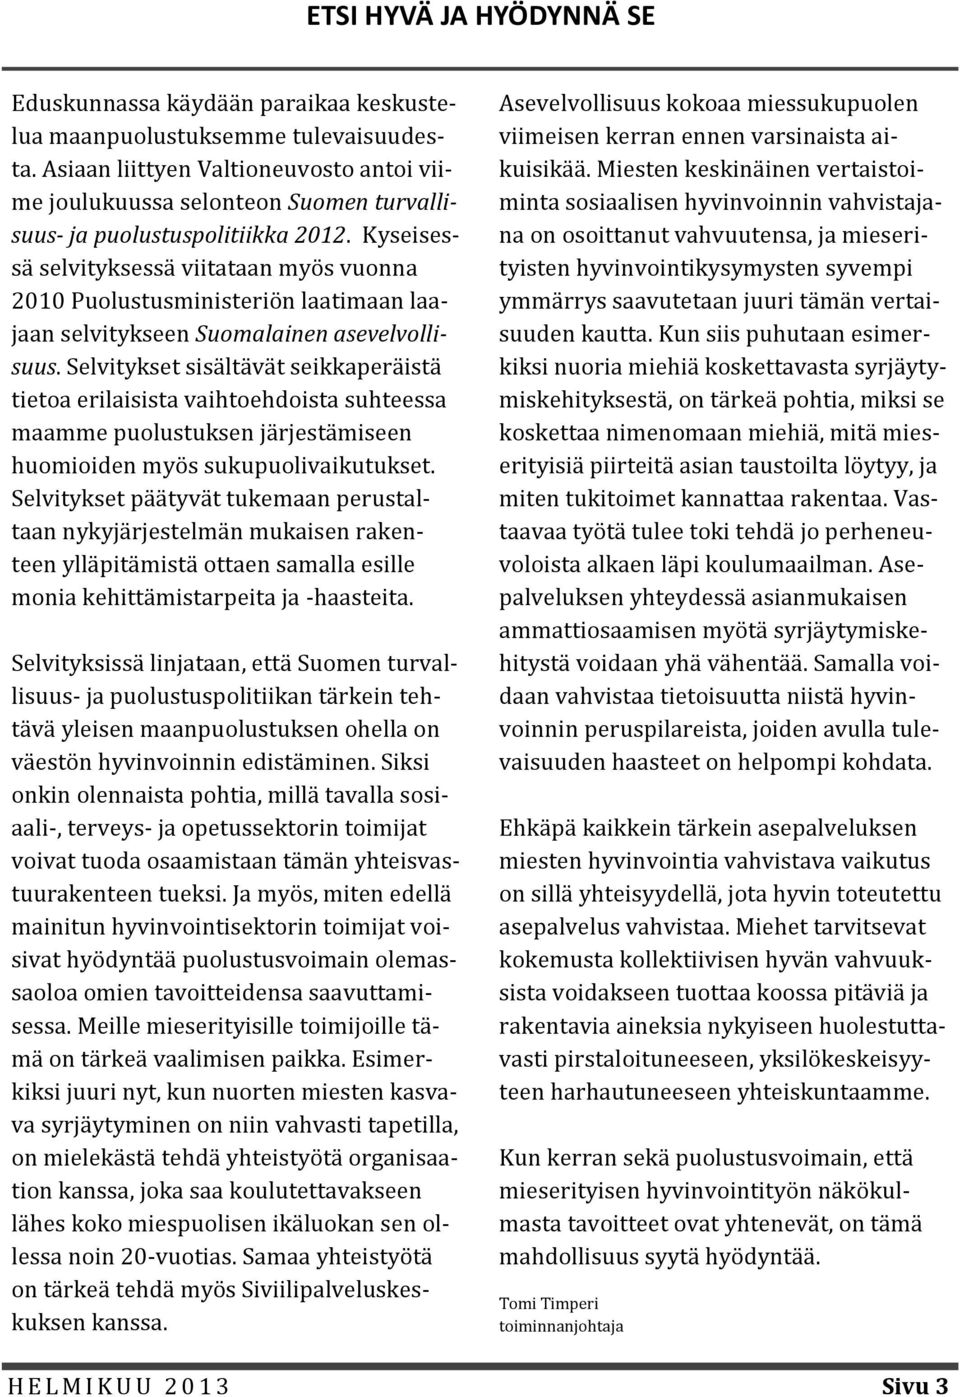 Kyseisessä selvityksessä viitataan myös vuonna 2010 Puolustusministeriön laatimaan laajaan selvitykseen Suomalainen asevelvollisuus.